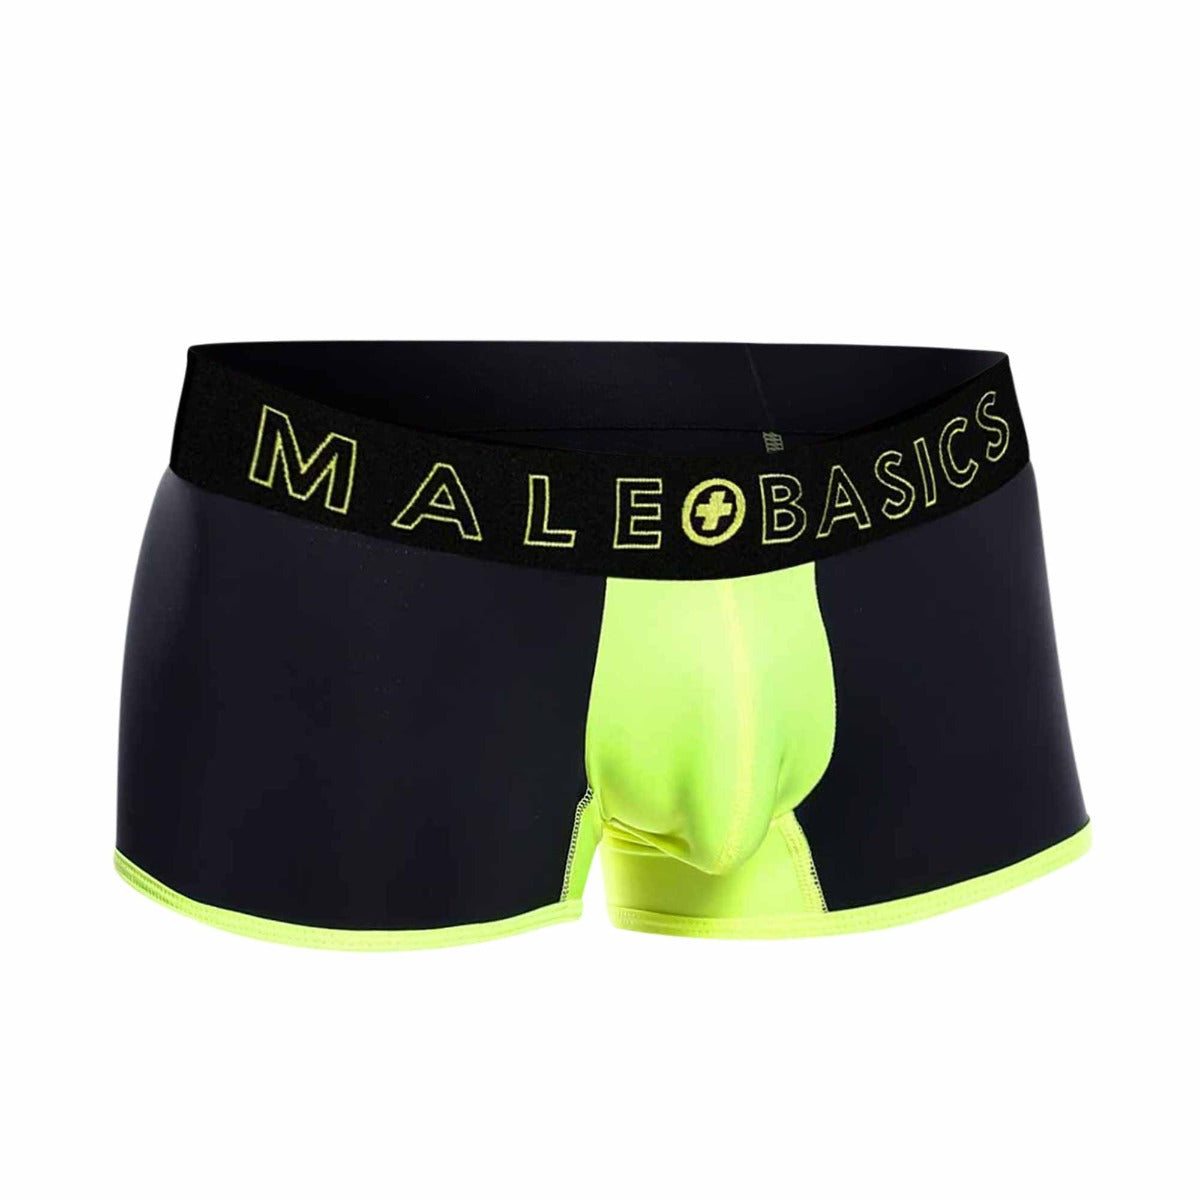 MaleBasics Nuevo Boxer Corto Neon